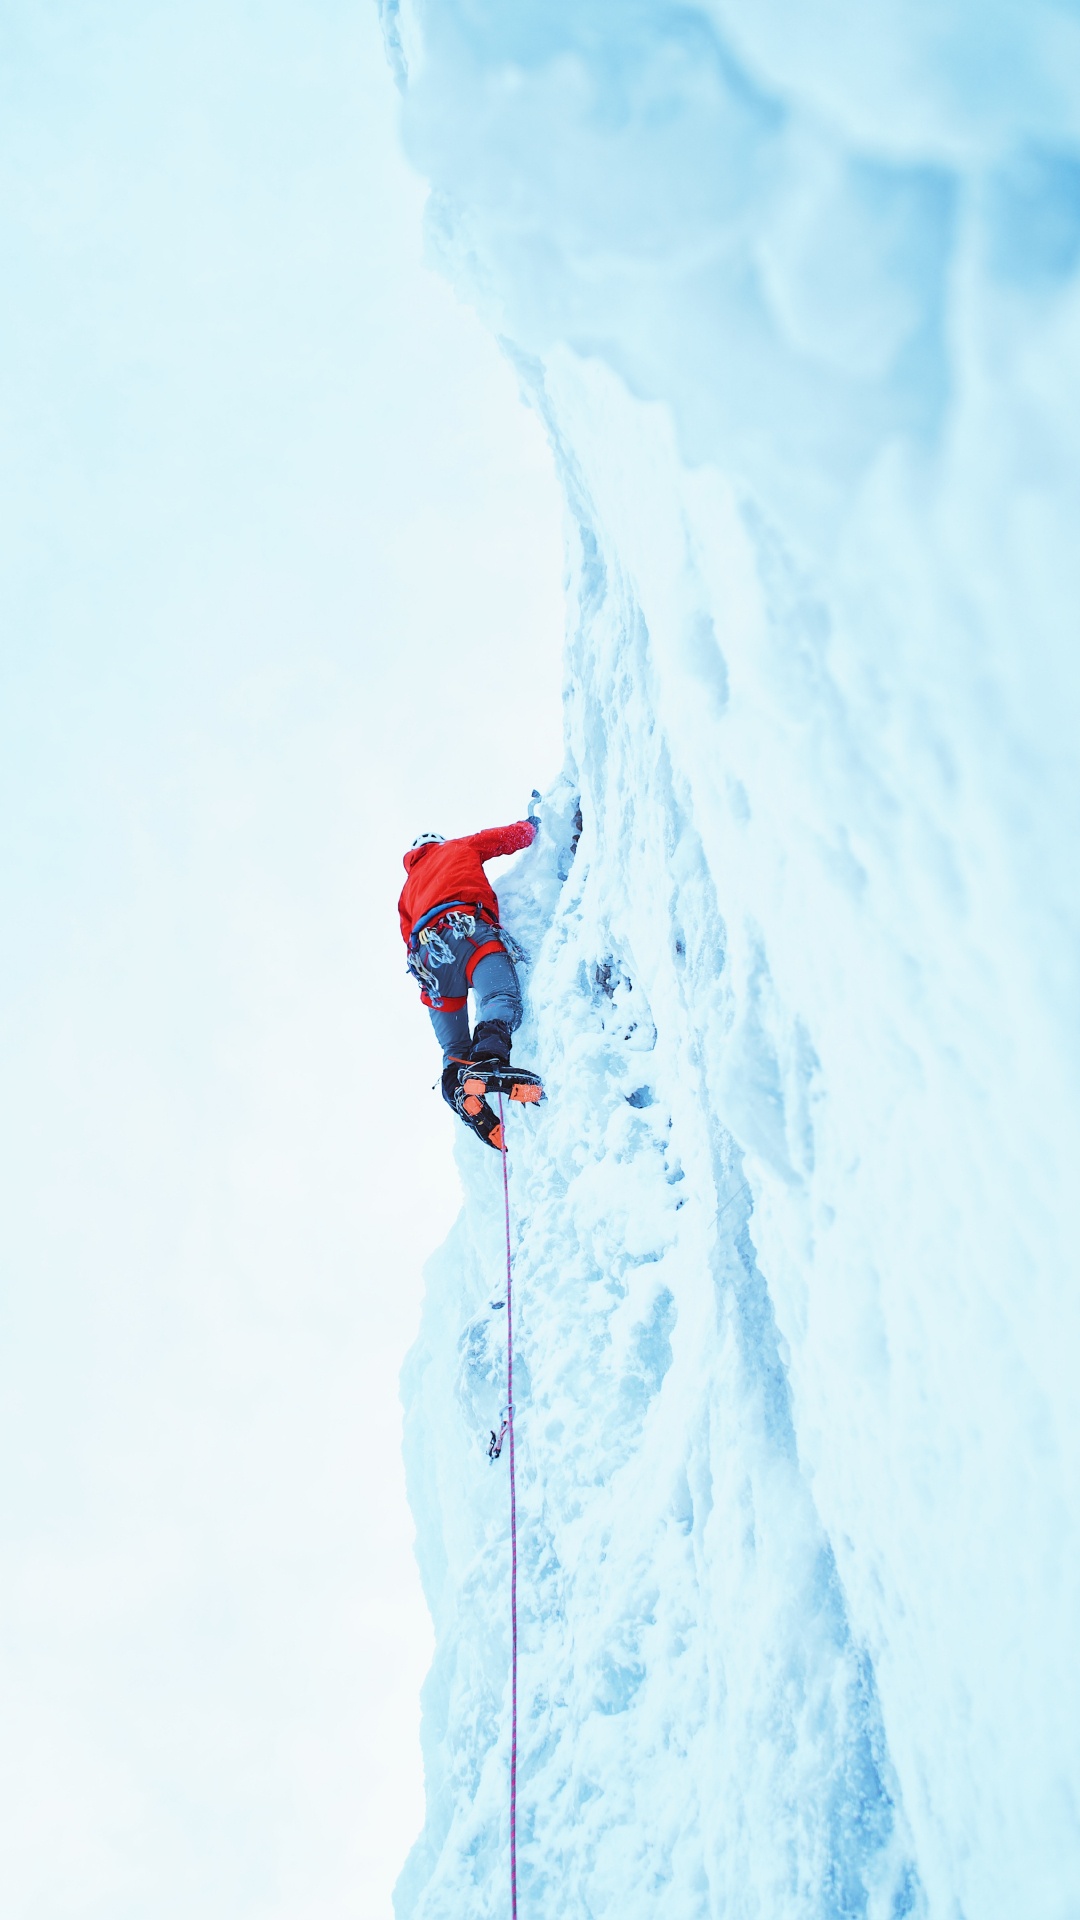 攀登, 极限运动, 登山, 冒险, 娱乐 壁纸 1080x1920 允许